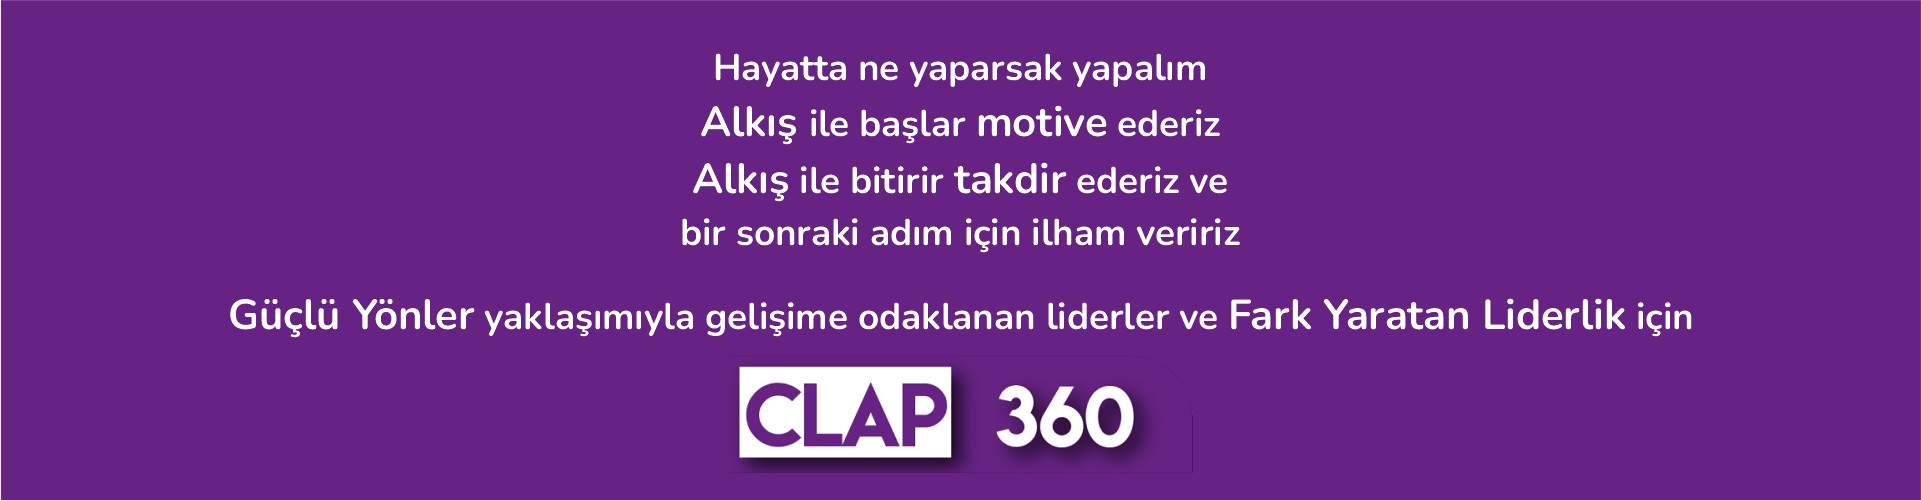 clap360